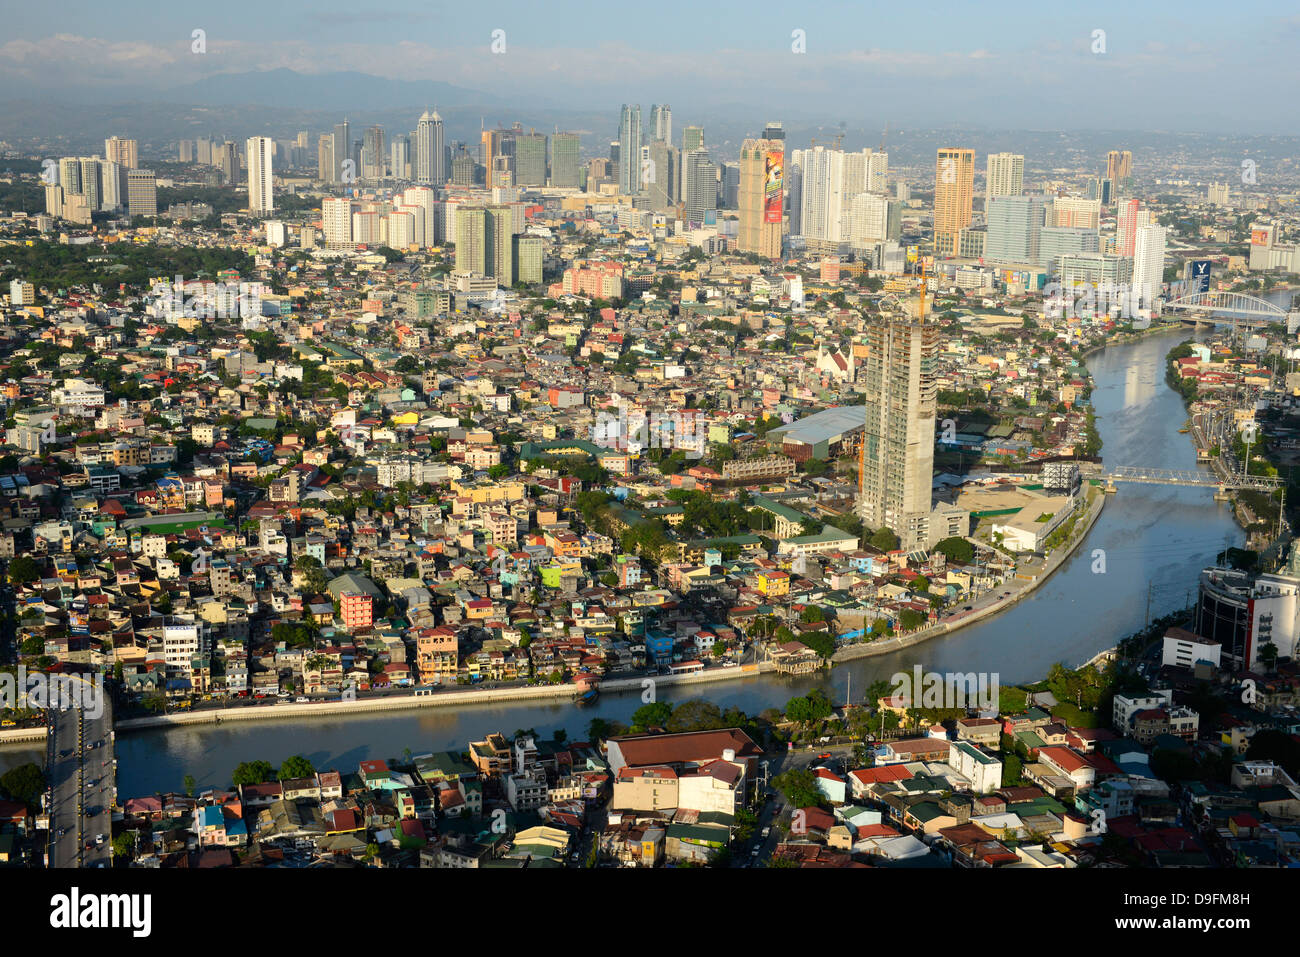 Les immeubles de grande hauteur sur l'Avenue d'ortiga, rivière Pasig et au-delà de Mandaluyong, Metromanila, aux Philippines, en Asie du sud-est Banque D'Images